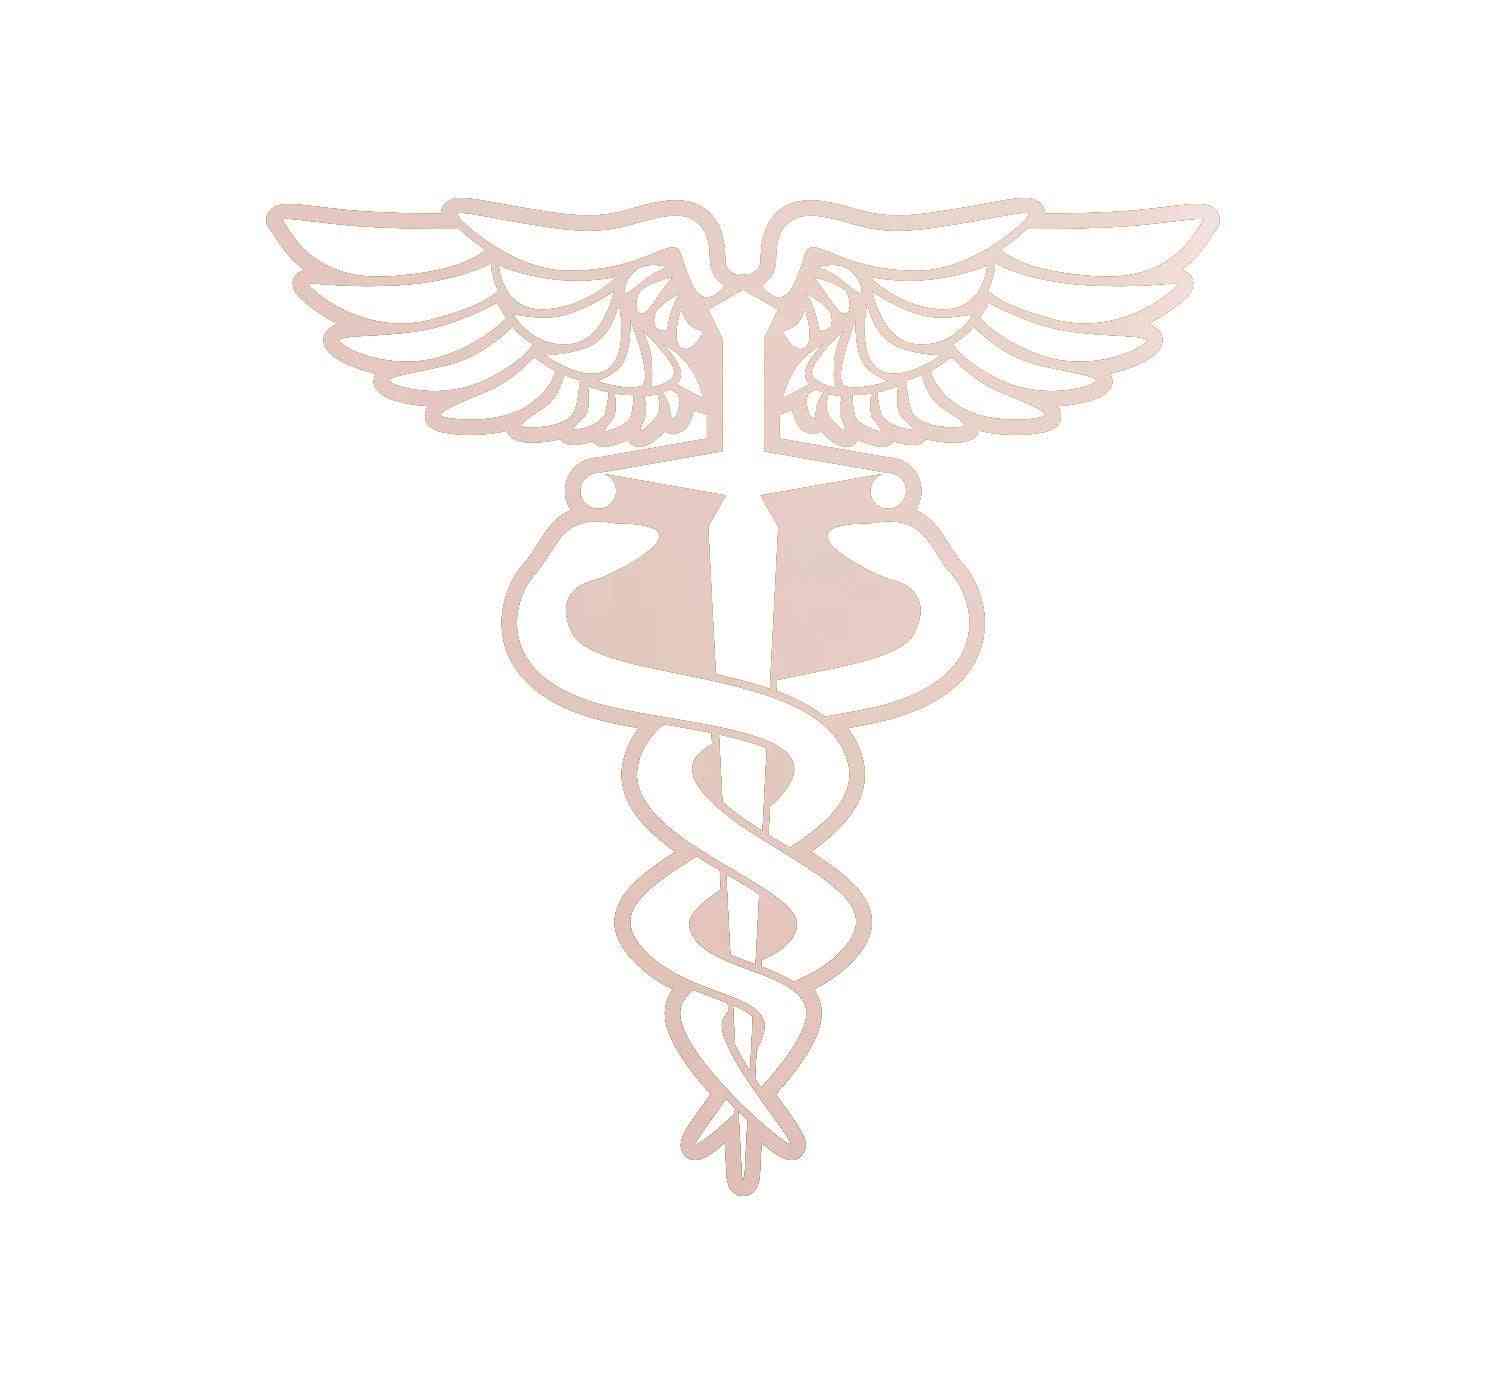 Medical Symbol - Doctor/nurse/emt